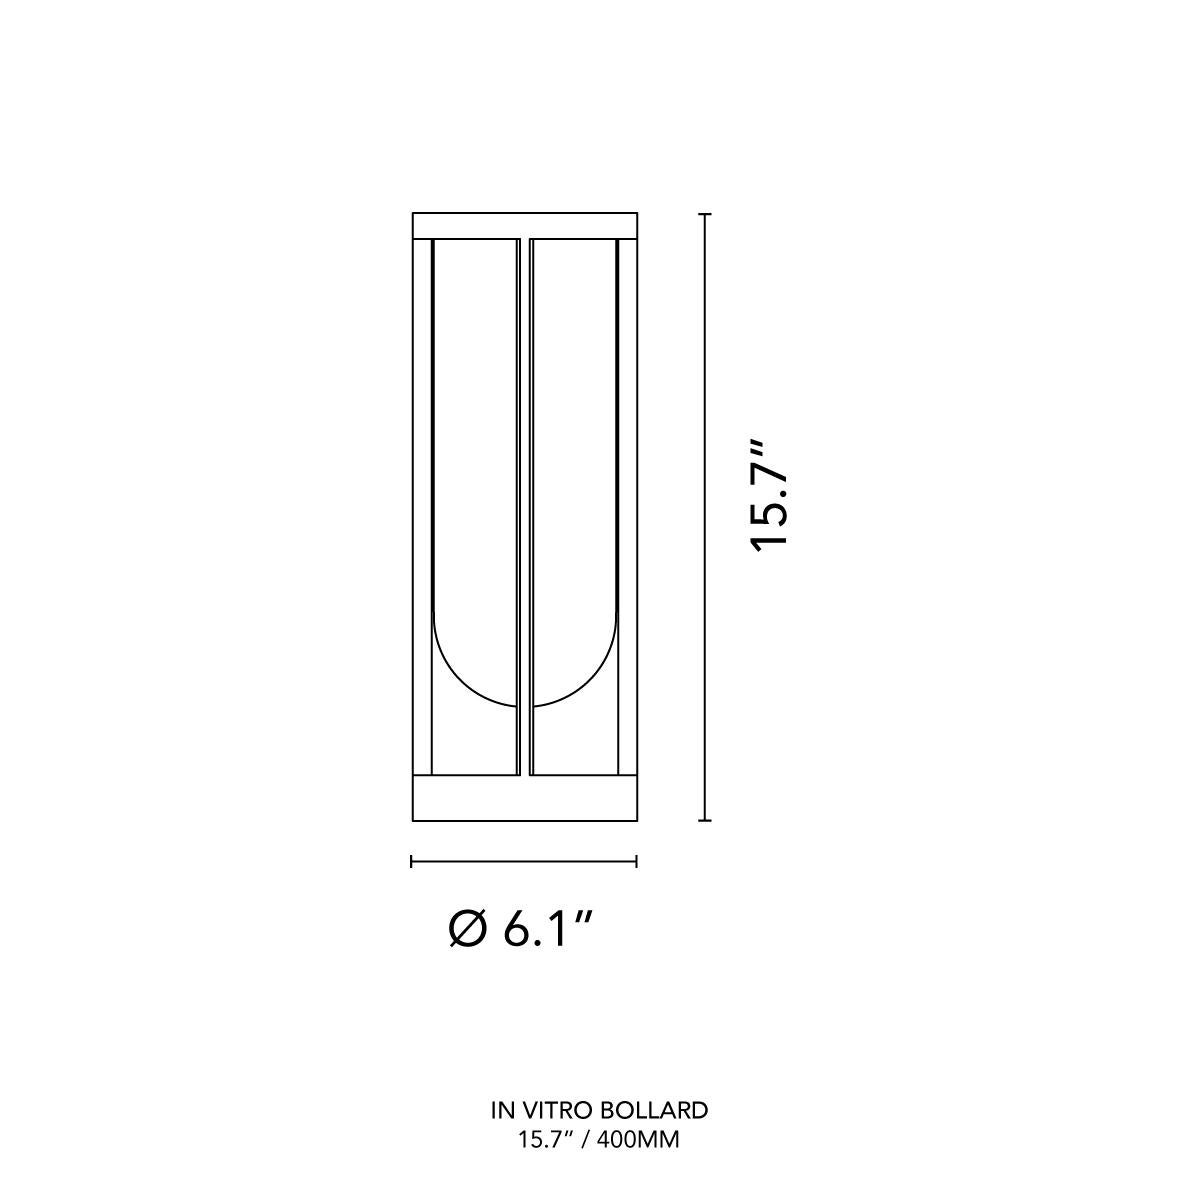 Die von Philippe Starck entworfene elegante Außenleuchtenkollektion In Vitro (übersetzt: Glas im Inneren) modernisiert die klassische Laterne in eine zeitgenössische Struktur. Die Kollektion leuchtender Glaslaternen vereint Handwerkskunst und